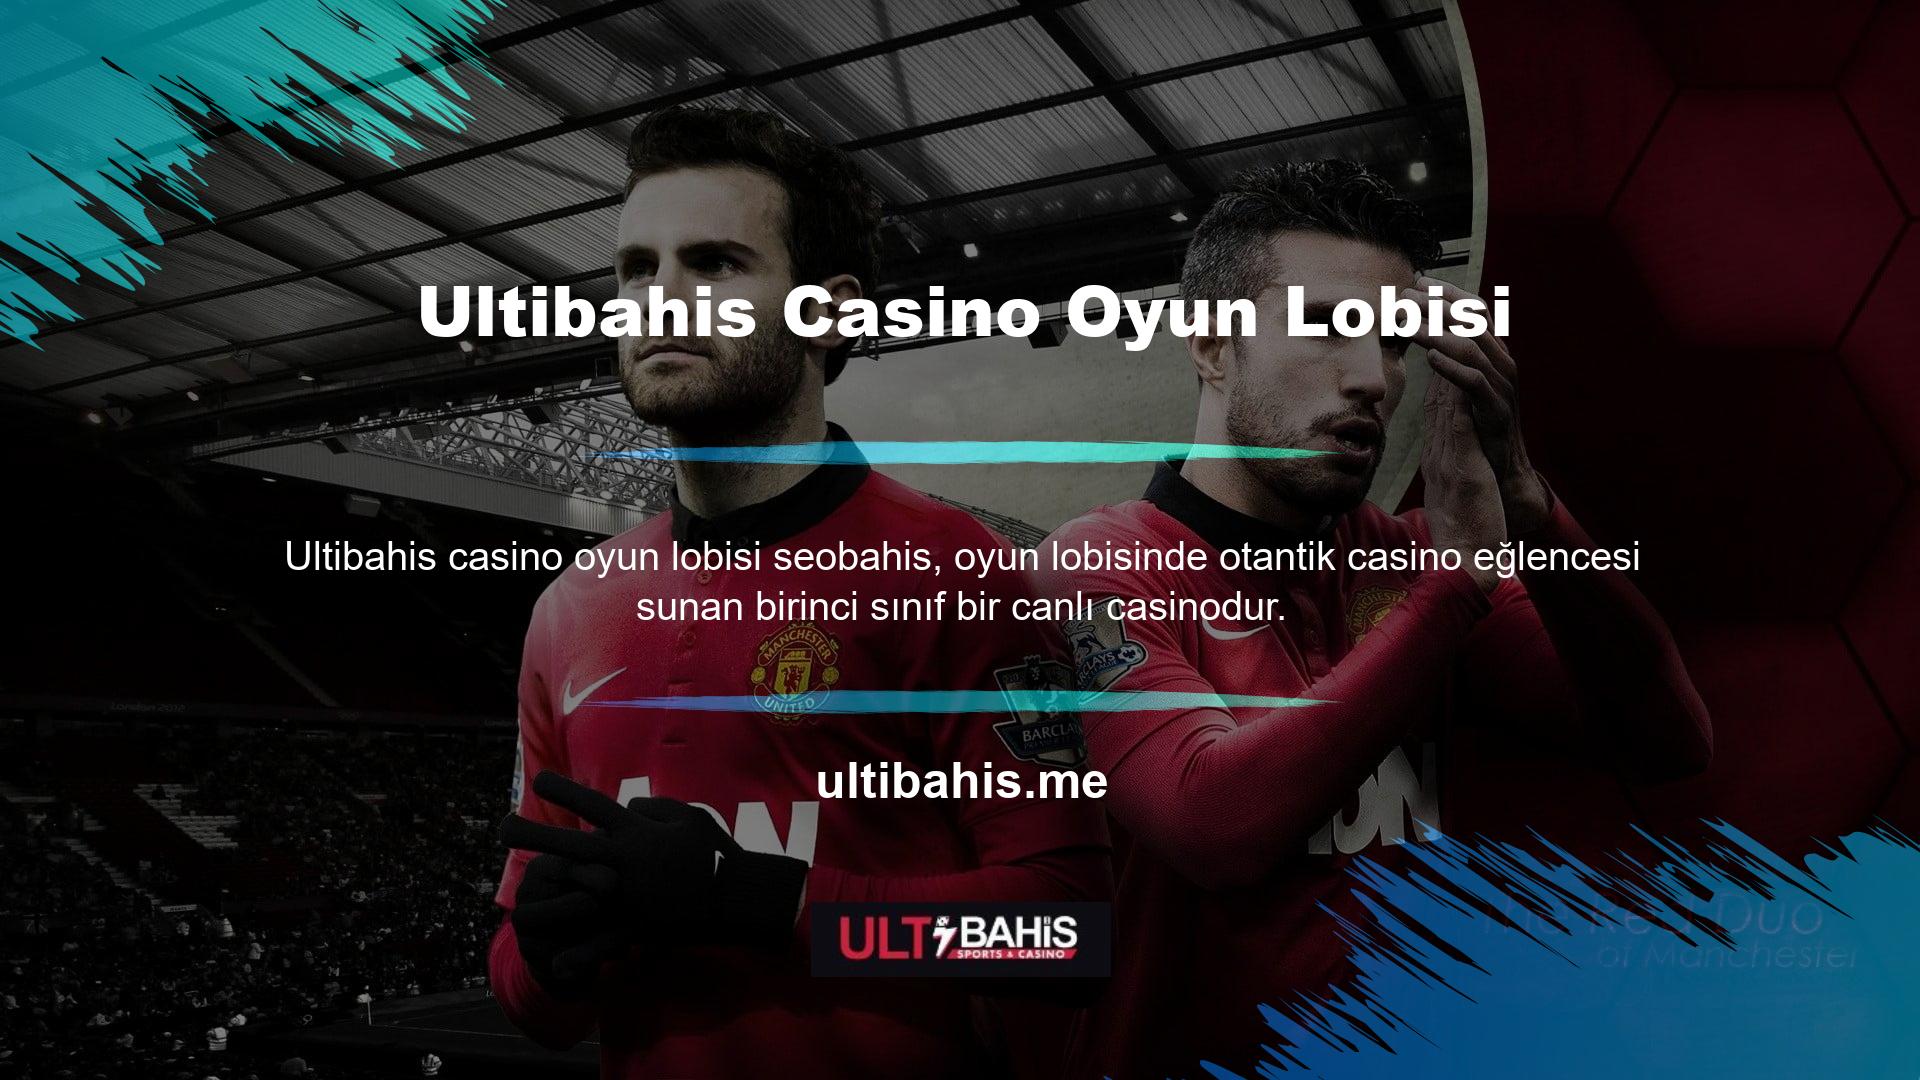 Ultibahis web sitesinin sektördeki diğer online casino ve bahis sitelerine göre önemli avantajları bulunmaktadır